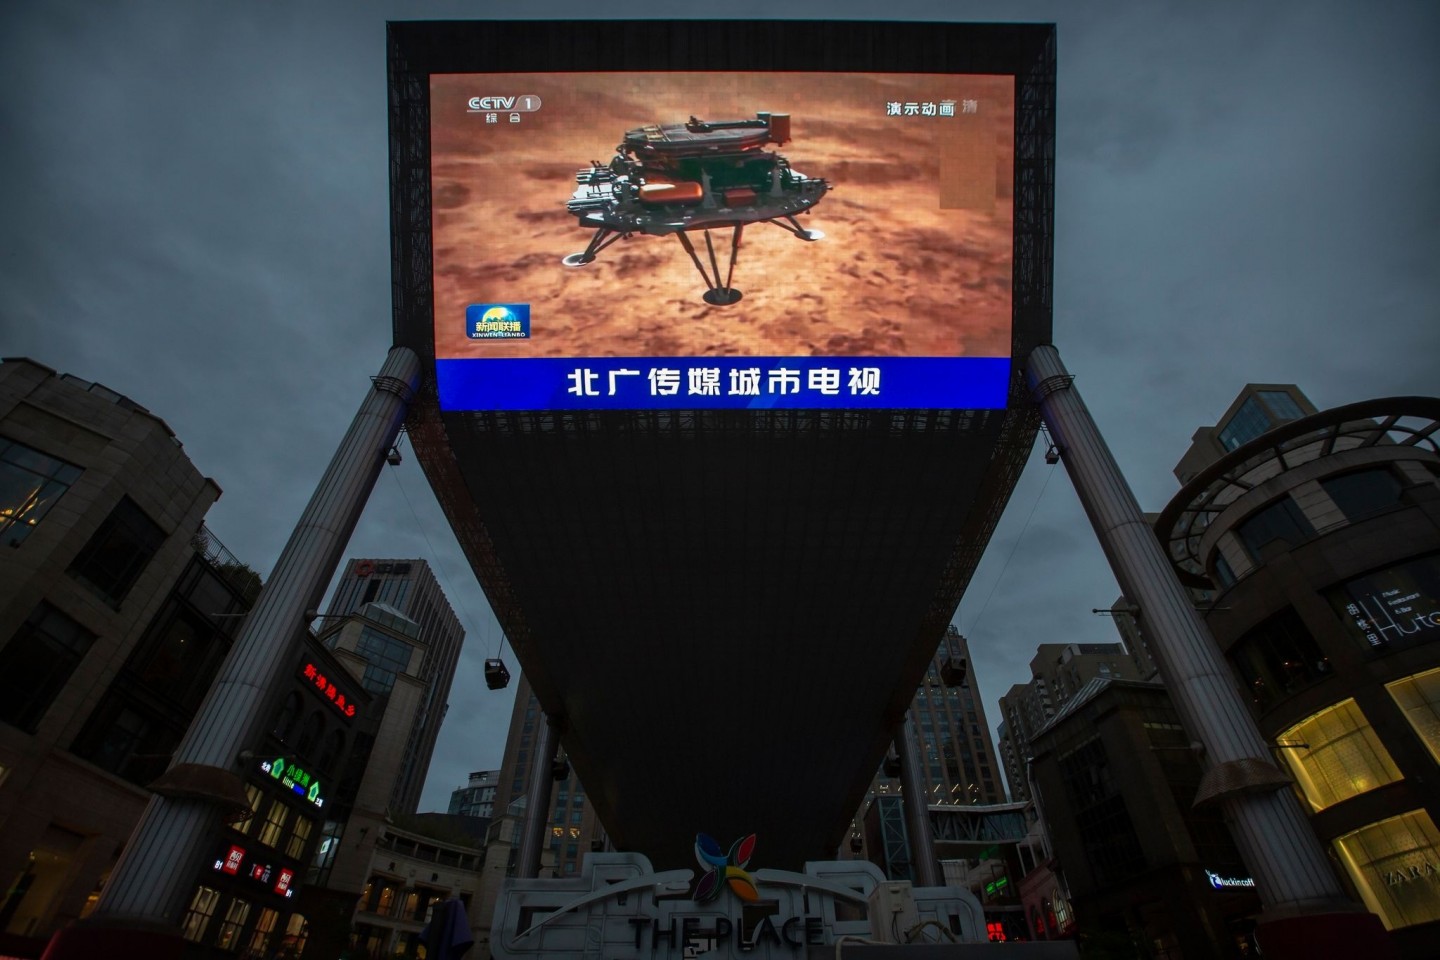 Feiertag für das chinesische Staatsfernsehen: Eine Nachrichtensendung über die erfolgreiche Landung einer Sonde auf dem Mars wird auf einem großen Videobildschirm gezeigt.